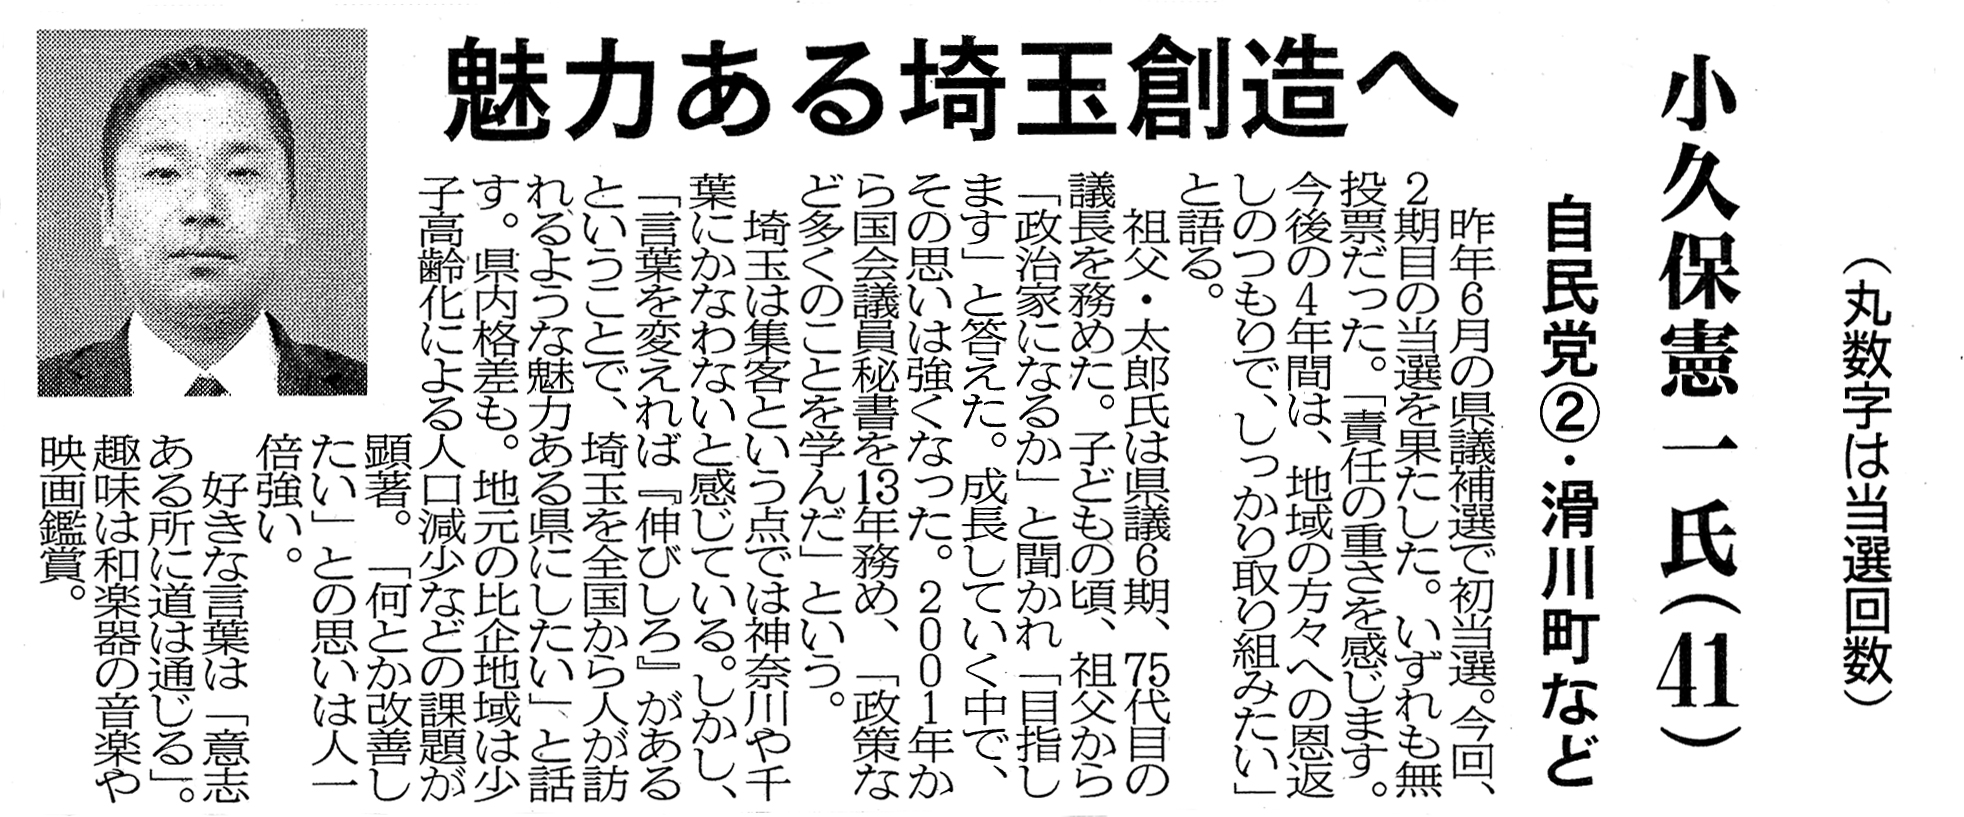 埼玉新聞「県議会93人の横顔」